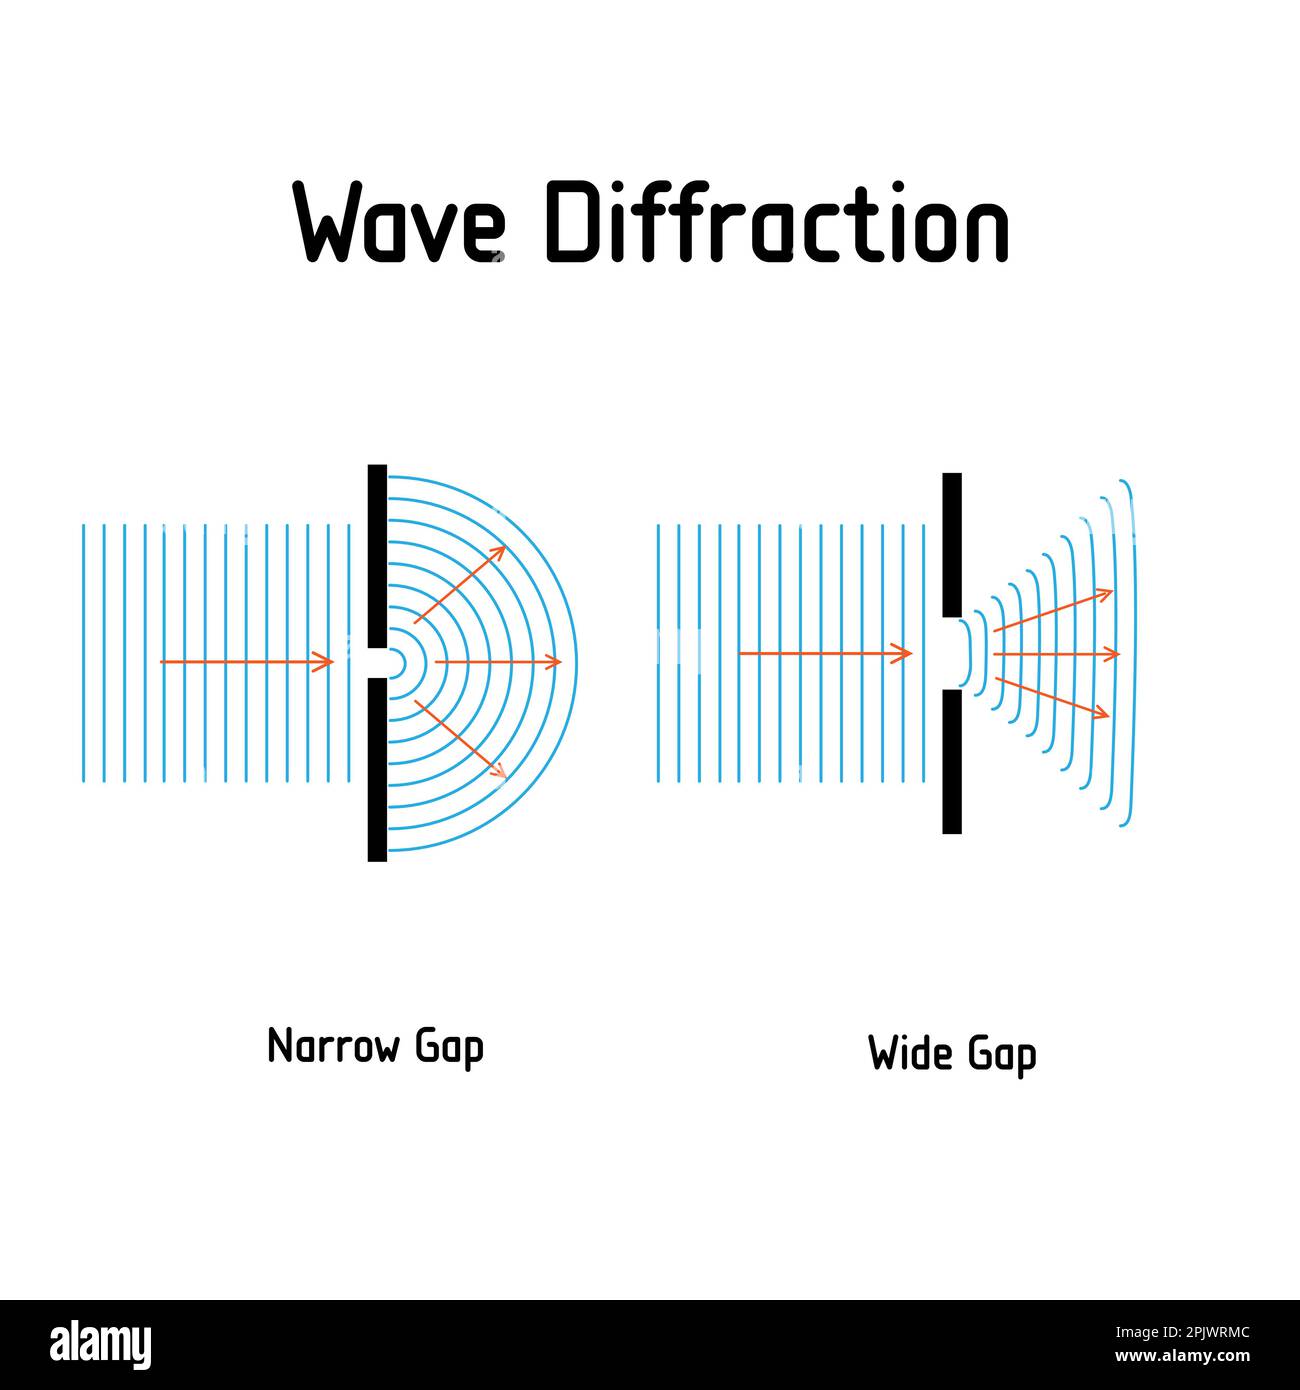 Wellenbeugung. Die Welle wirkt auf enge, unterschiedlich große Lücken. Und verteilt euch über die Lücke hinaus. Vektordiagramm. Poster für Bildung, Schule, Physik Stock Vektor